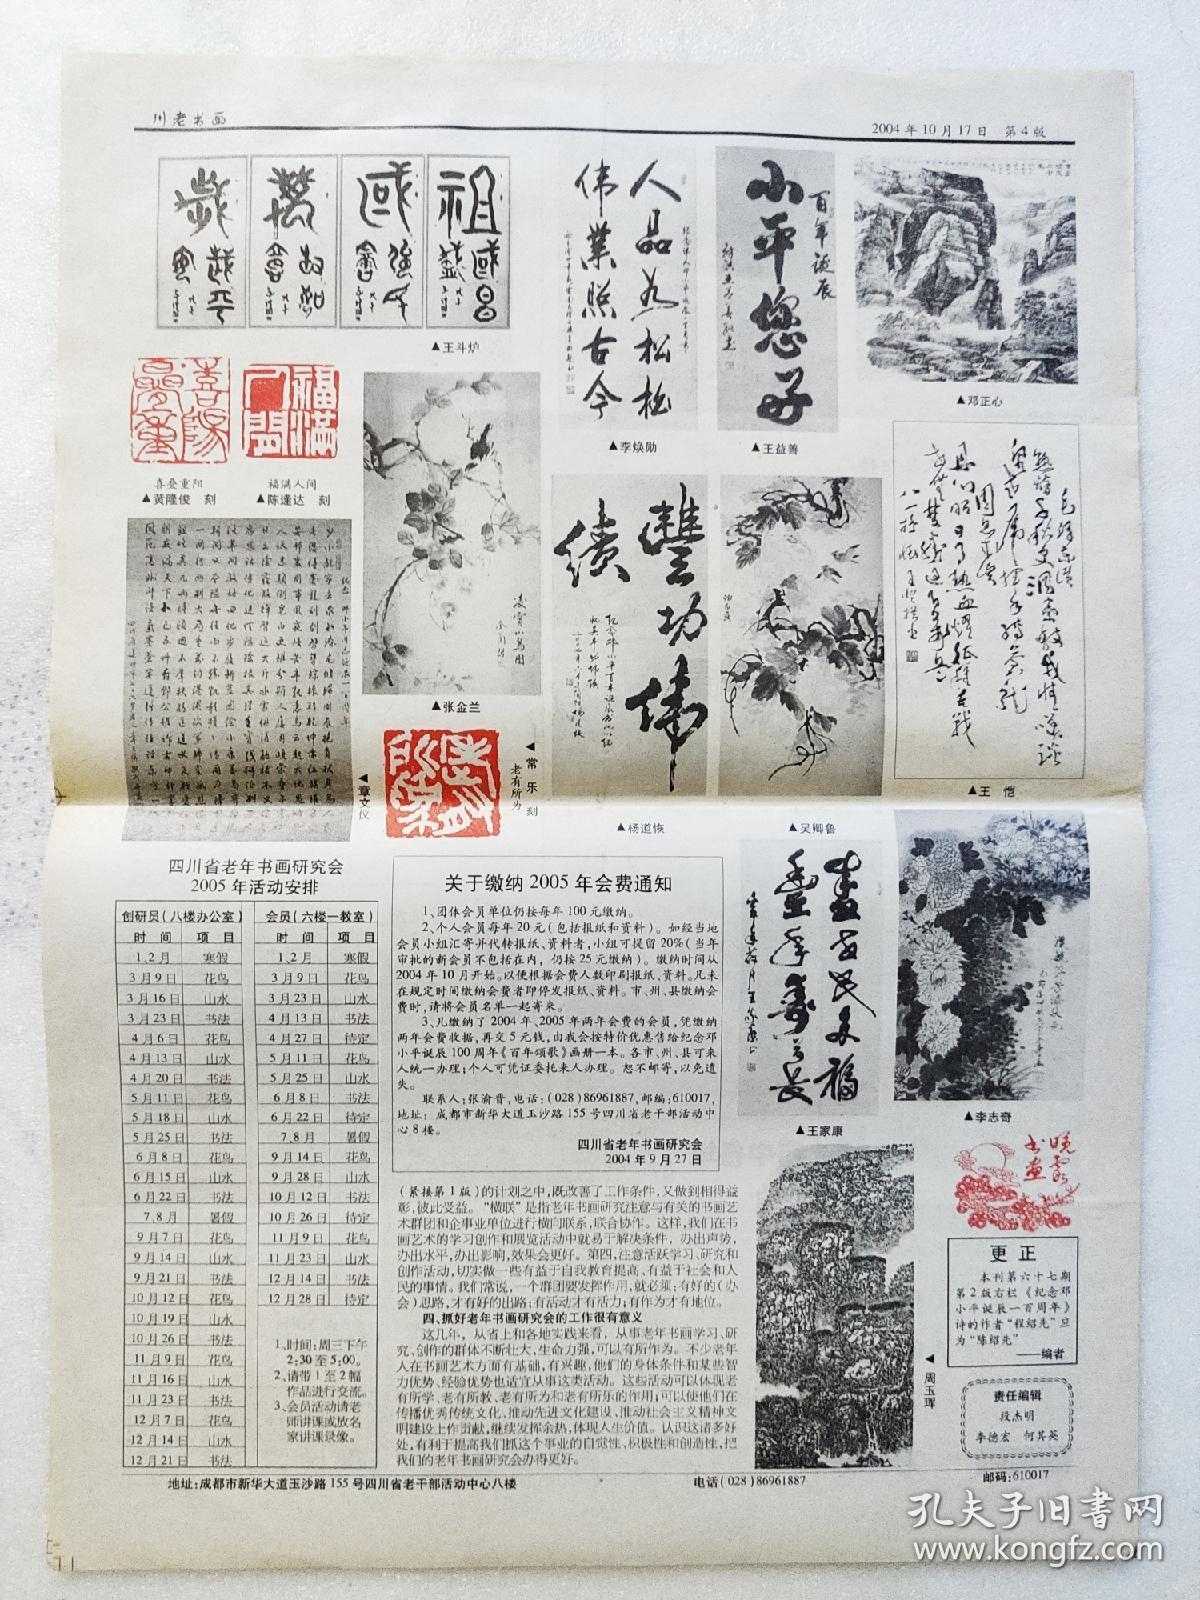 川老书画2004年10月17日。庆祝中华人民共和国成立55周年。纪念邓小平同志诞辰100周年。